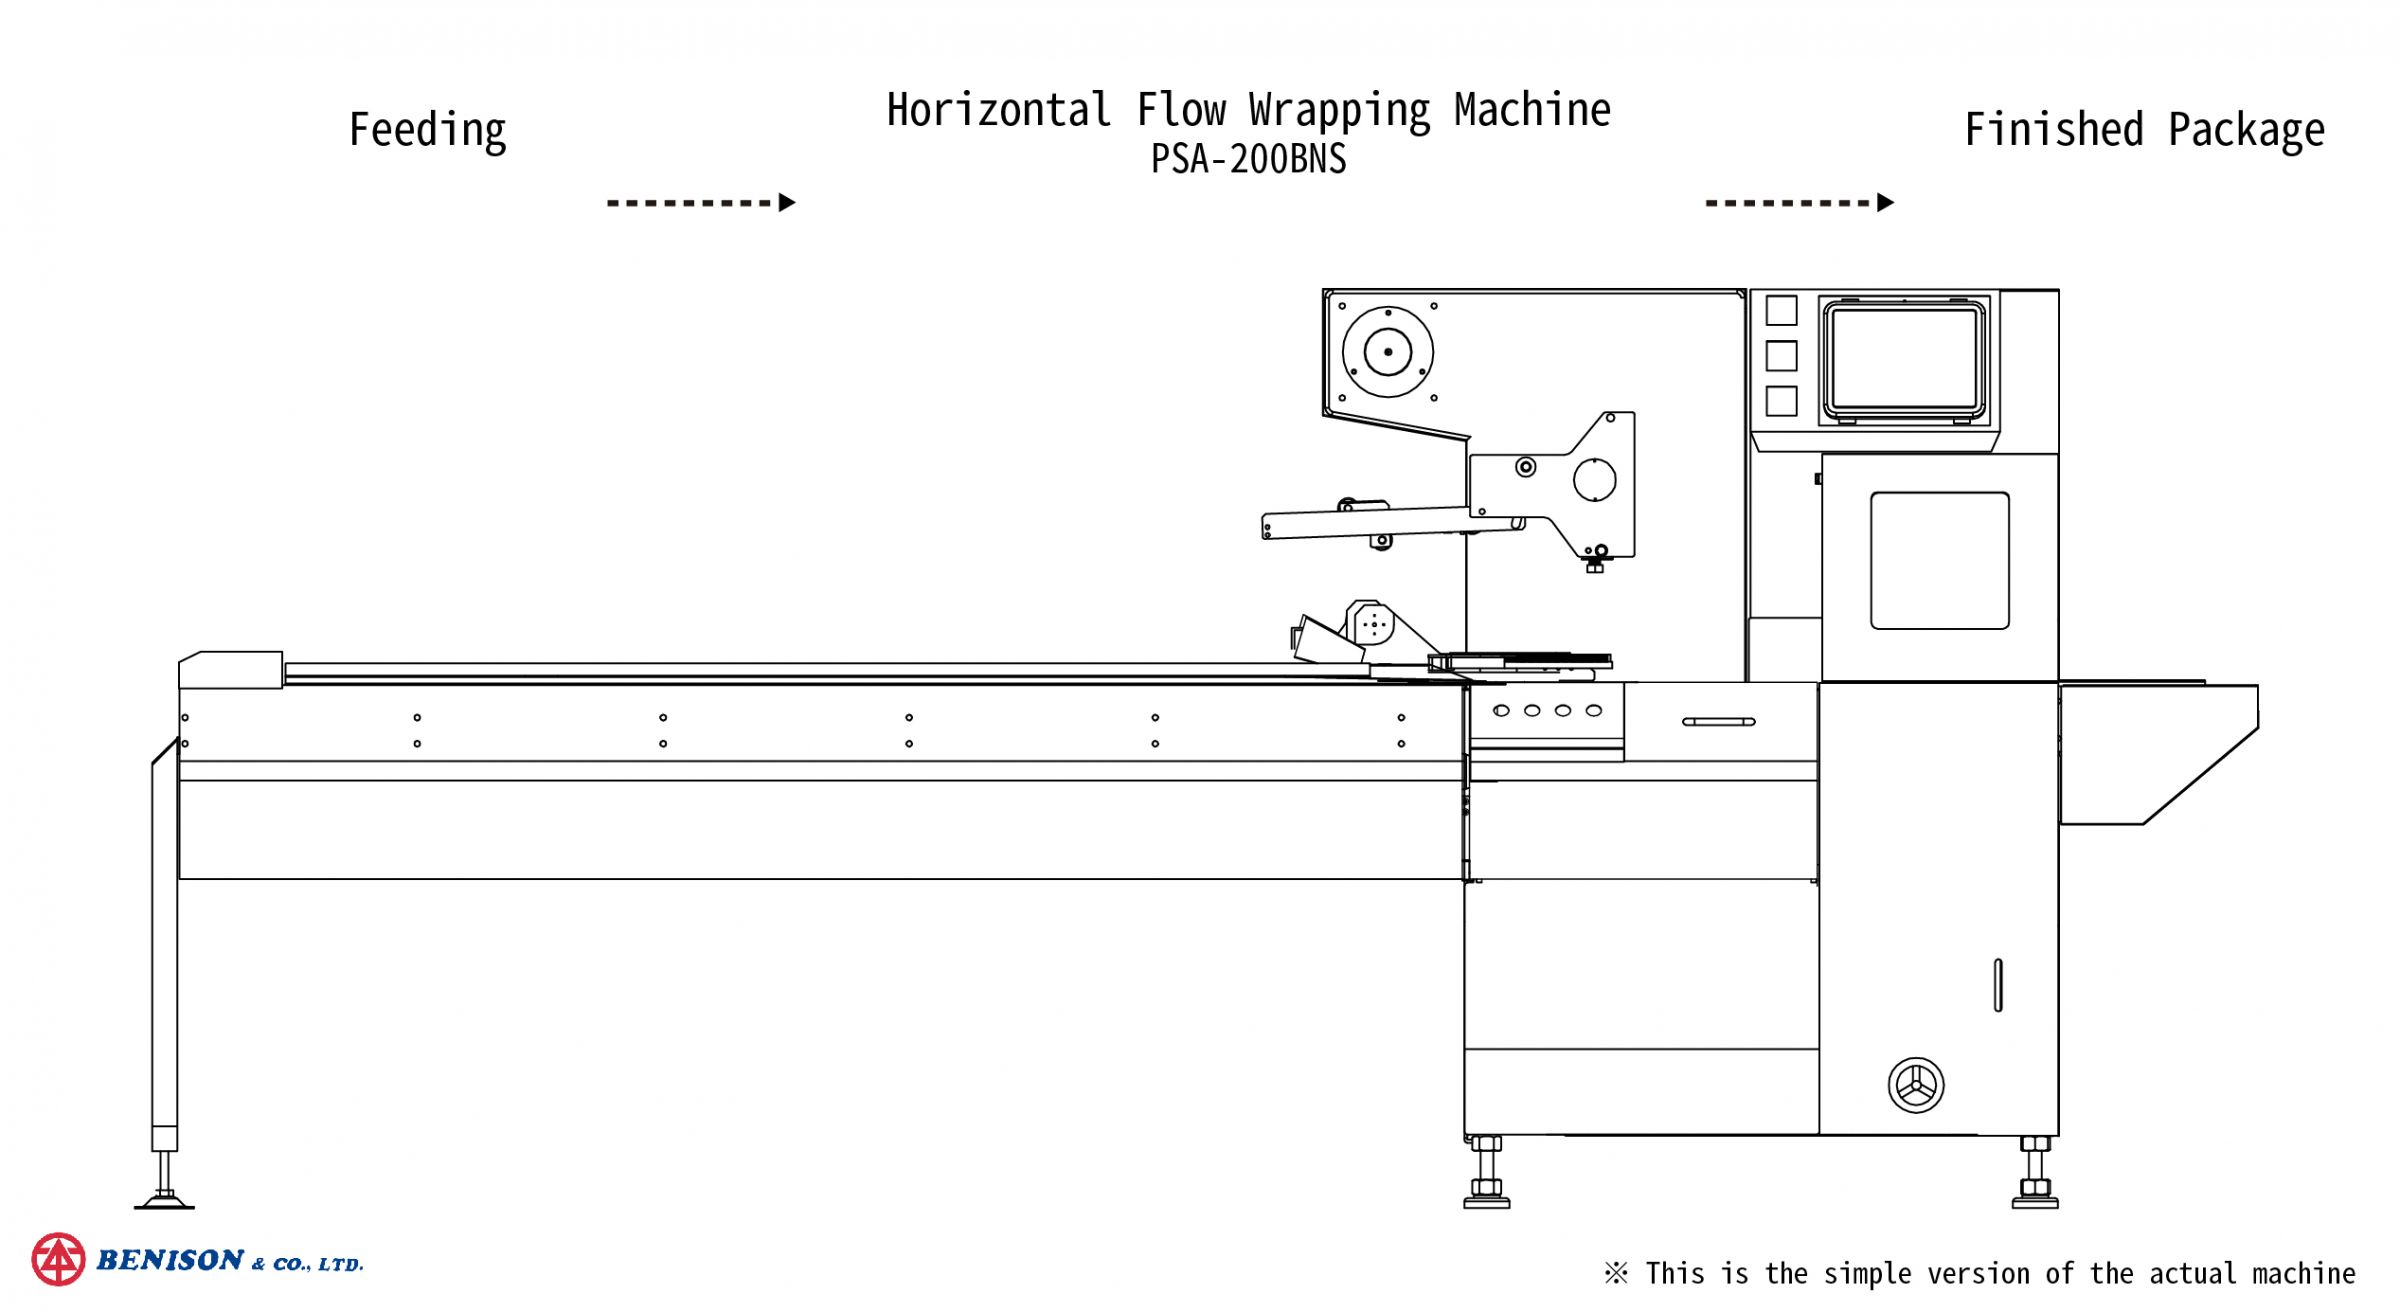 마스크 포장 솔루션을 위한 수평 플로우 랩핑 기계, PSA-200BNS